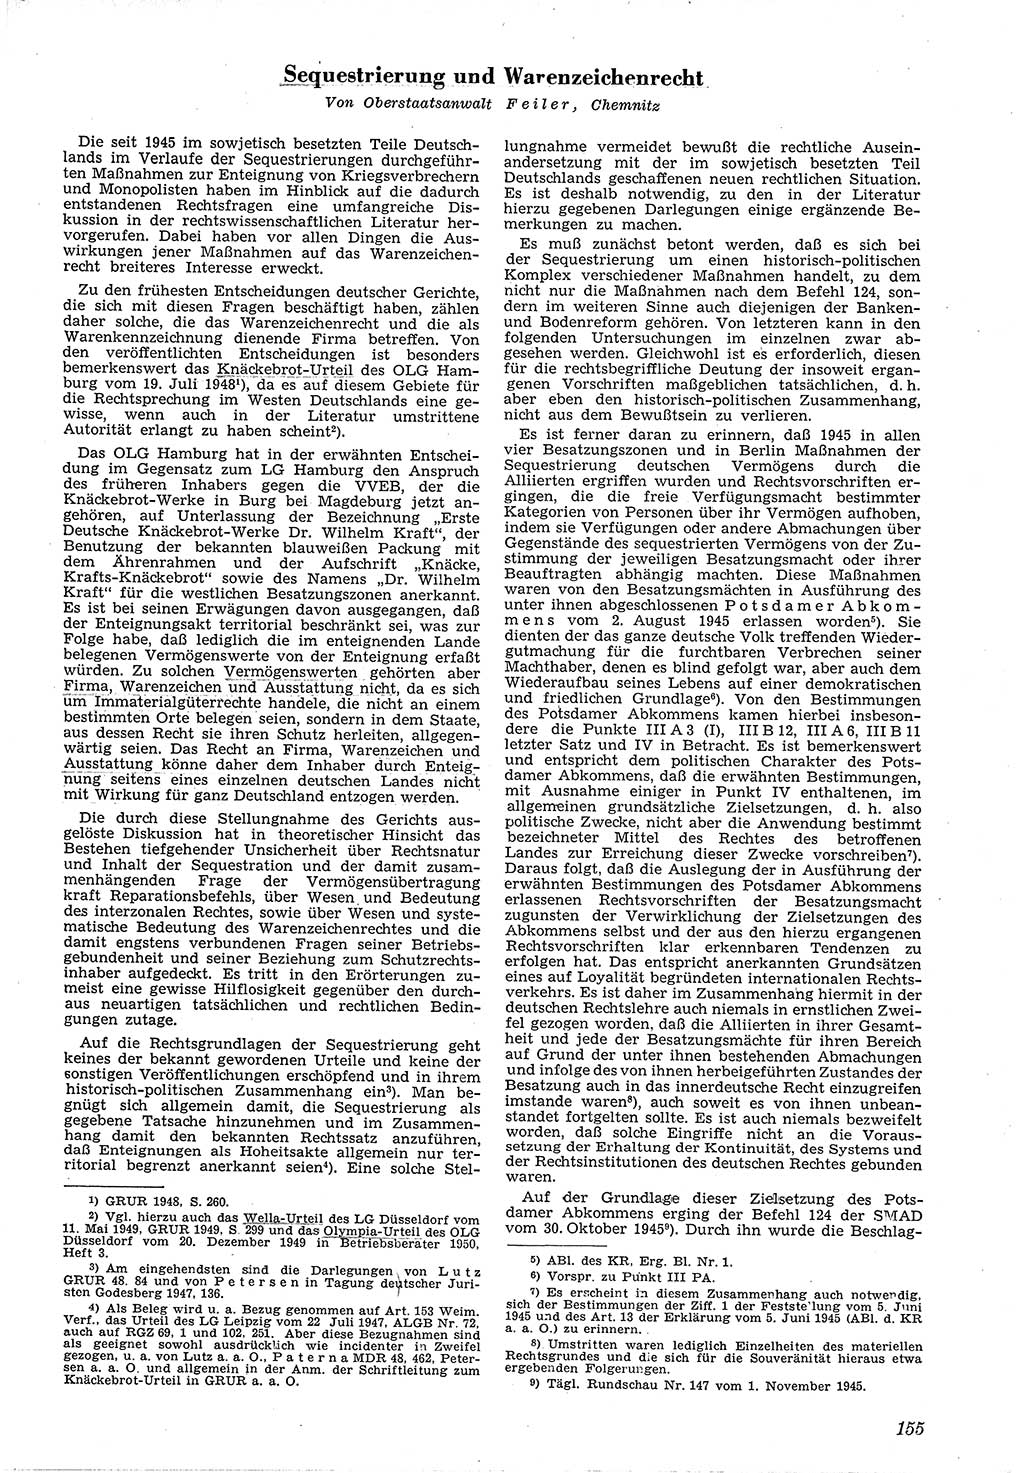 Neue Justiz (NJ), Zeitschrift für Recht und Rechtswissenschaft [Deutsche Demokratische Republik (DDR)], 4. Jahrgang 1950, Seite 155 (NJ DDR 1950, S. 155)